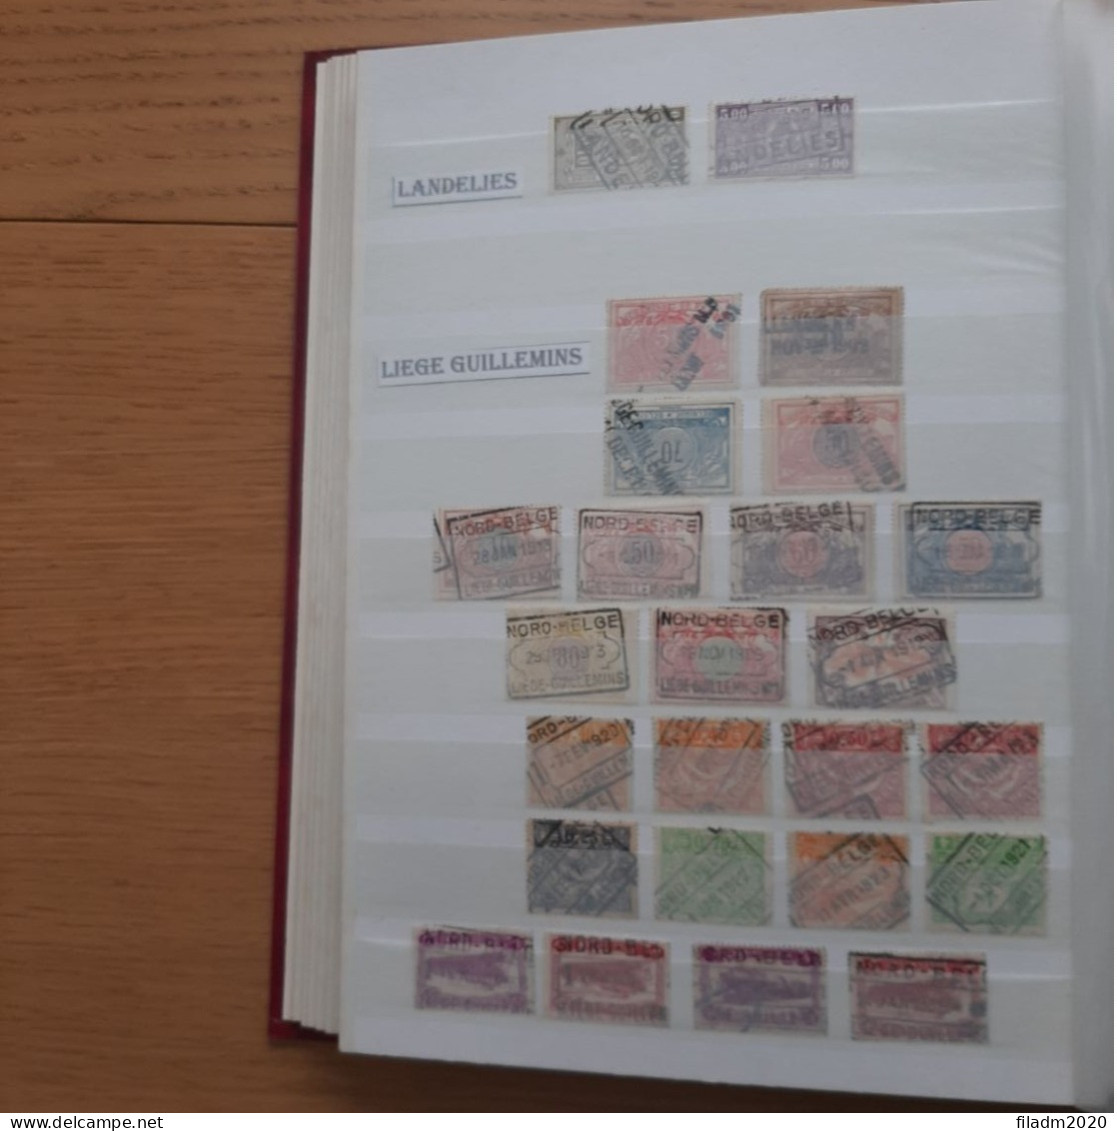 Collectie NORD BELGE gestempeld : 750 verschillende zegels : mooi opgezette verzameling in insteekboek